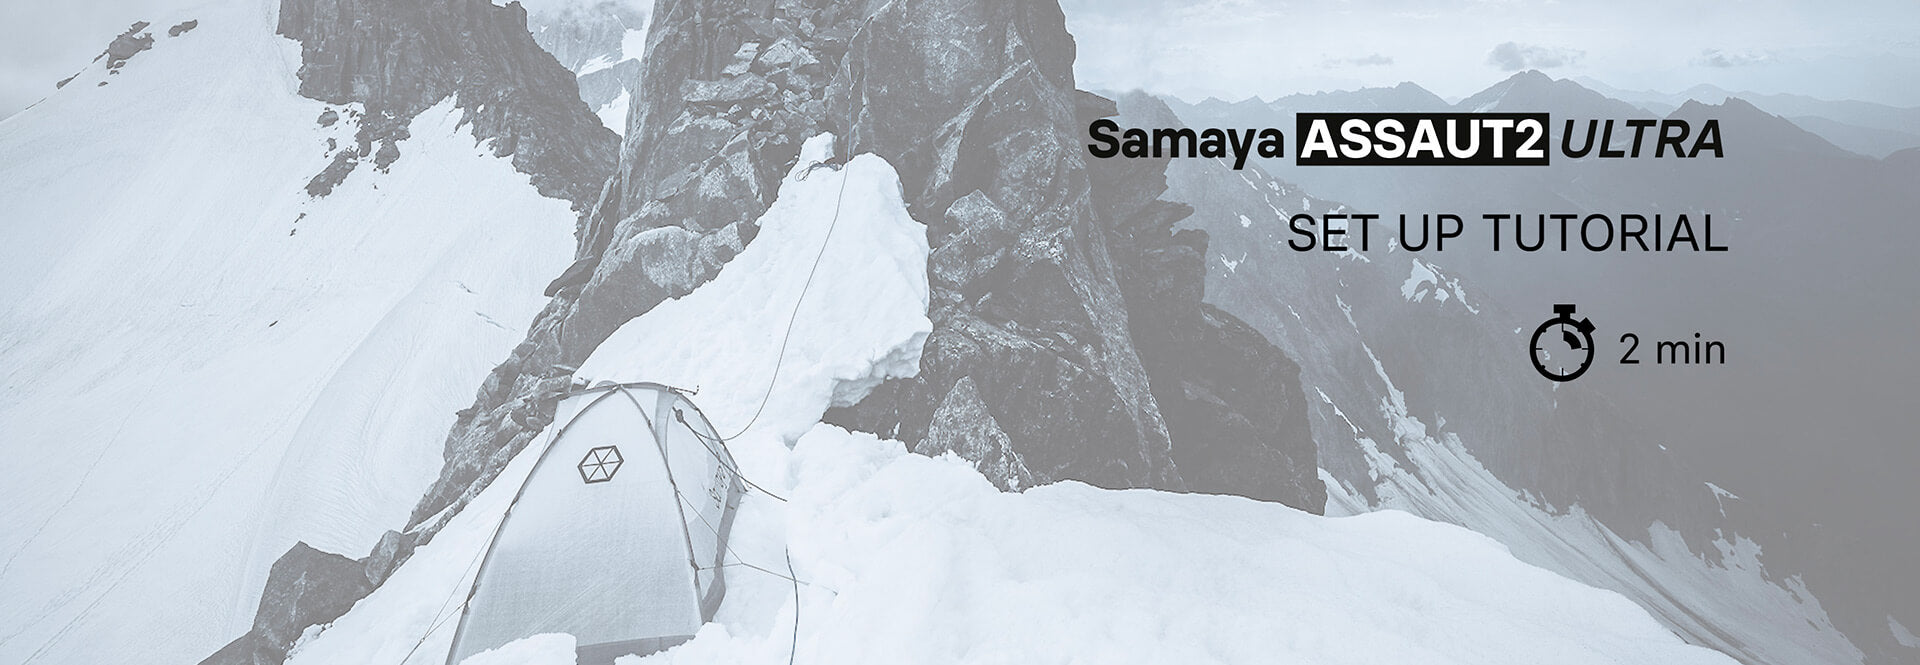 Guide de montage de la Samaya ASSAUT2 ULTRA